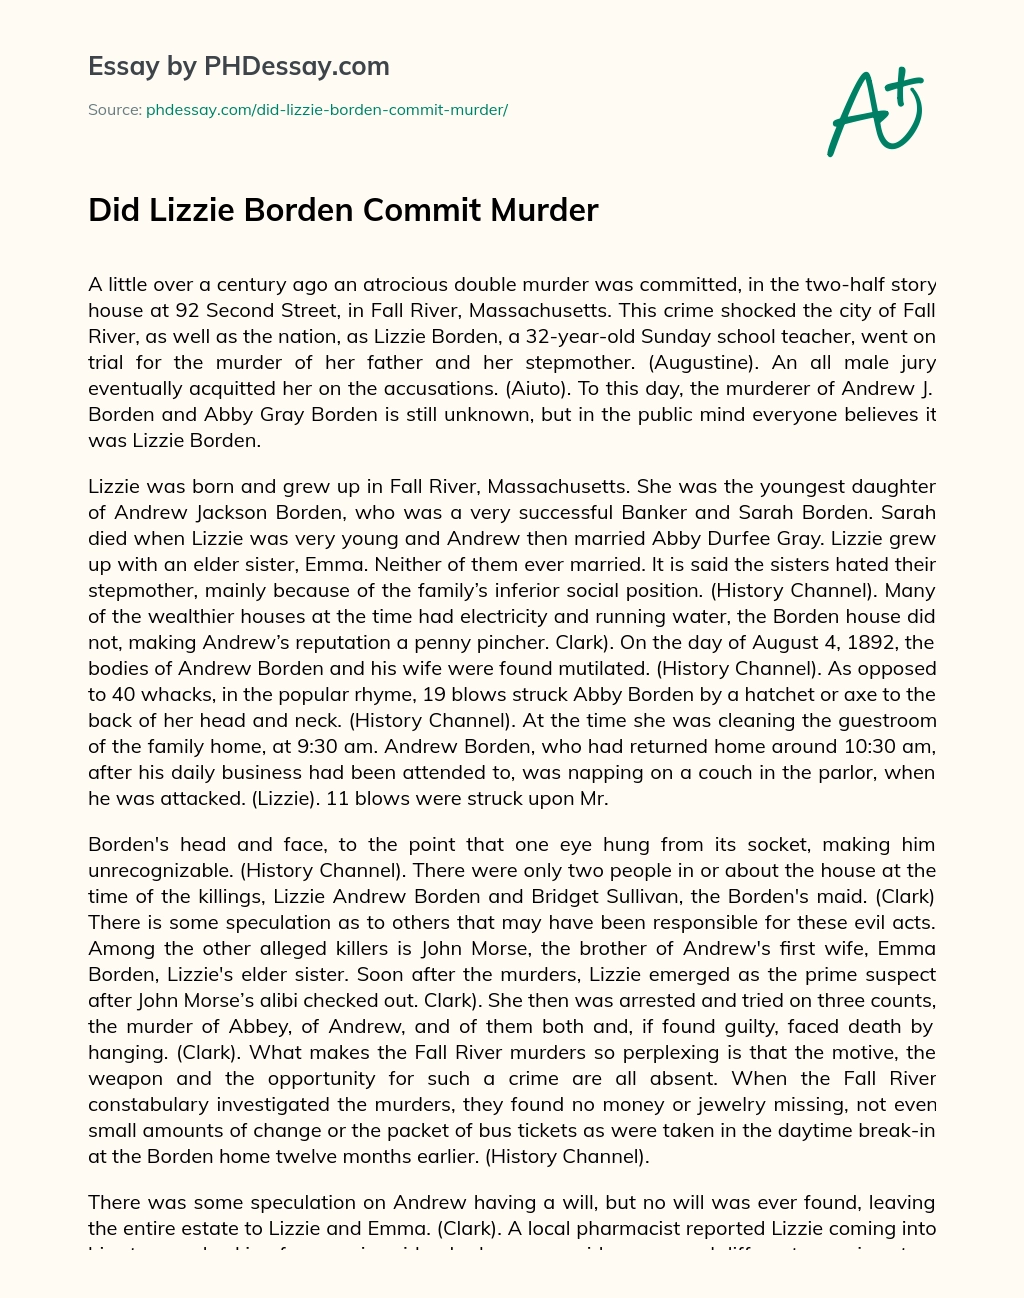 Did Lizzie Borden Commit Murder essay